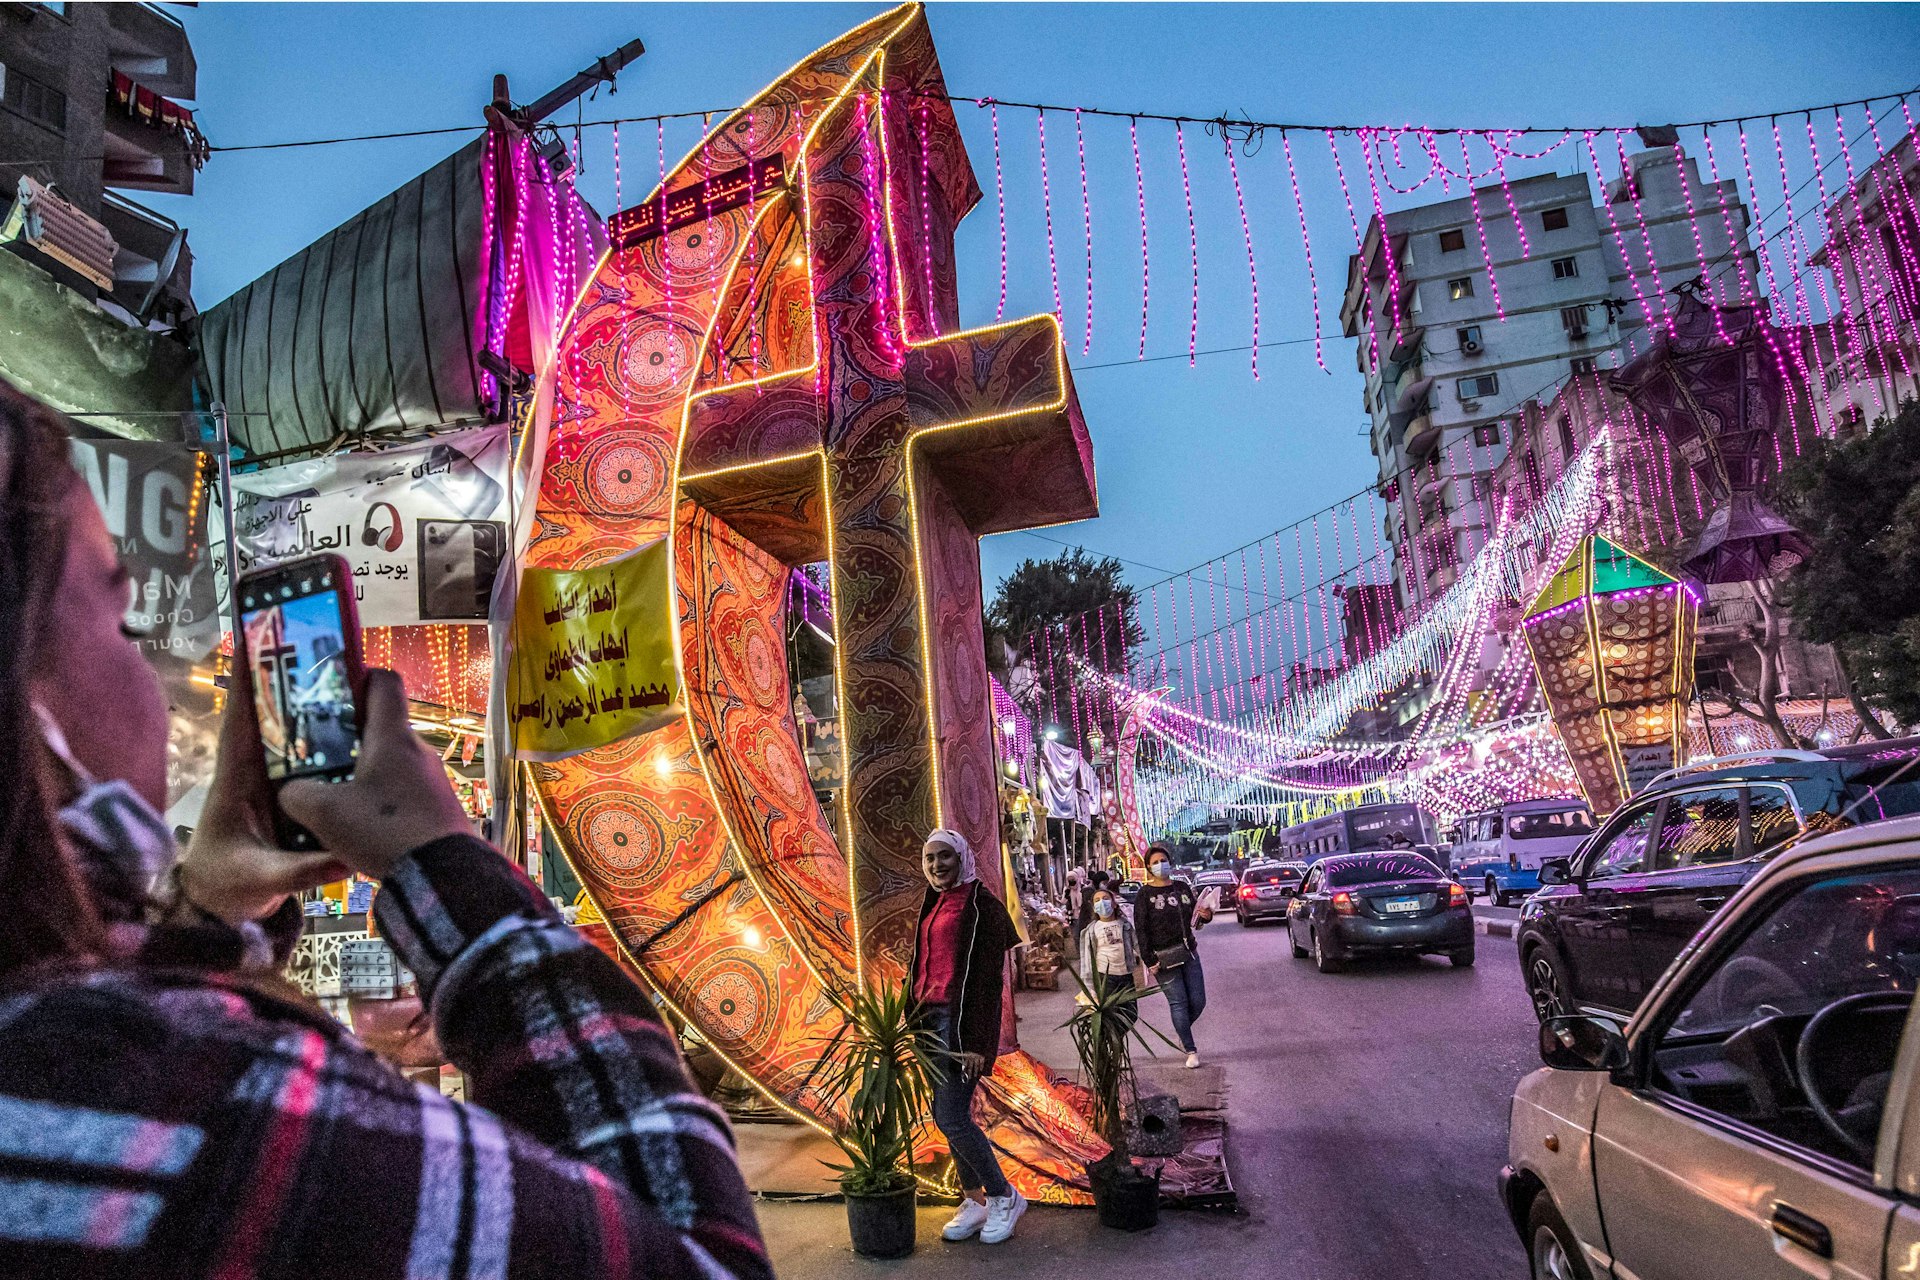 Light installations in Cairo for Ramadan